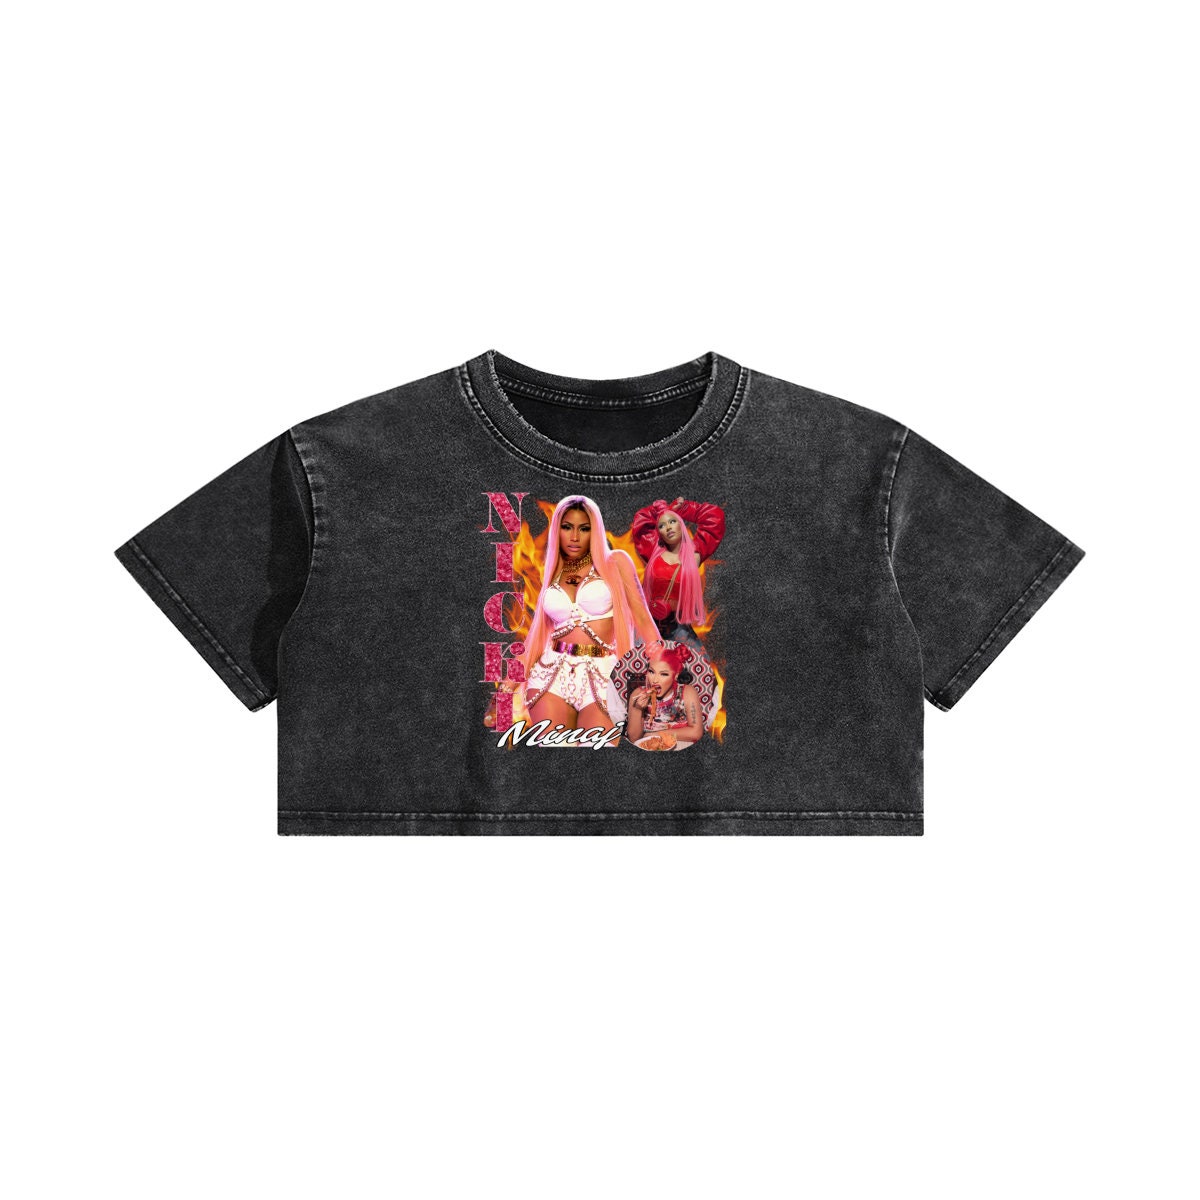 Nicki Minaj  Crop top Shirt Nicki Rapper Singer Minaj Band Crop Top T Shirt